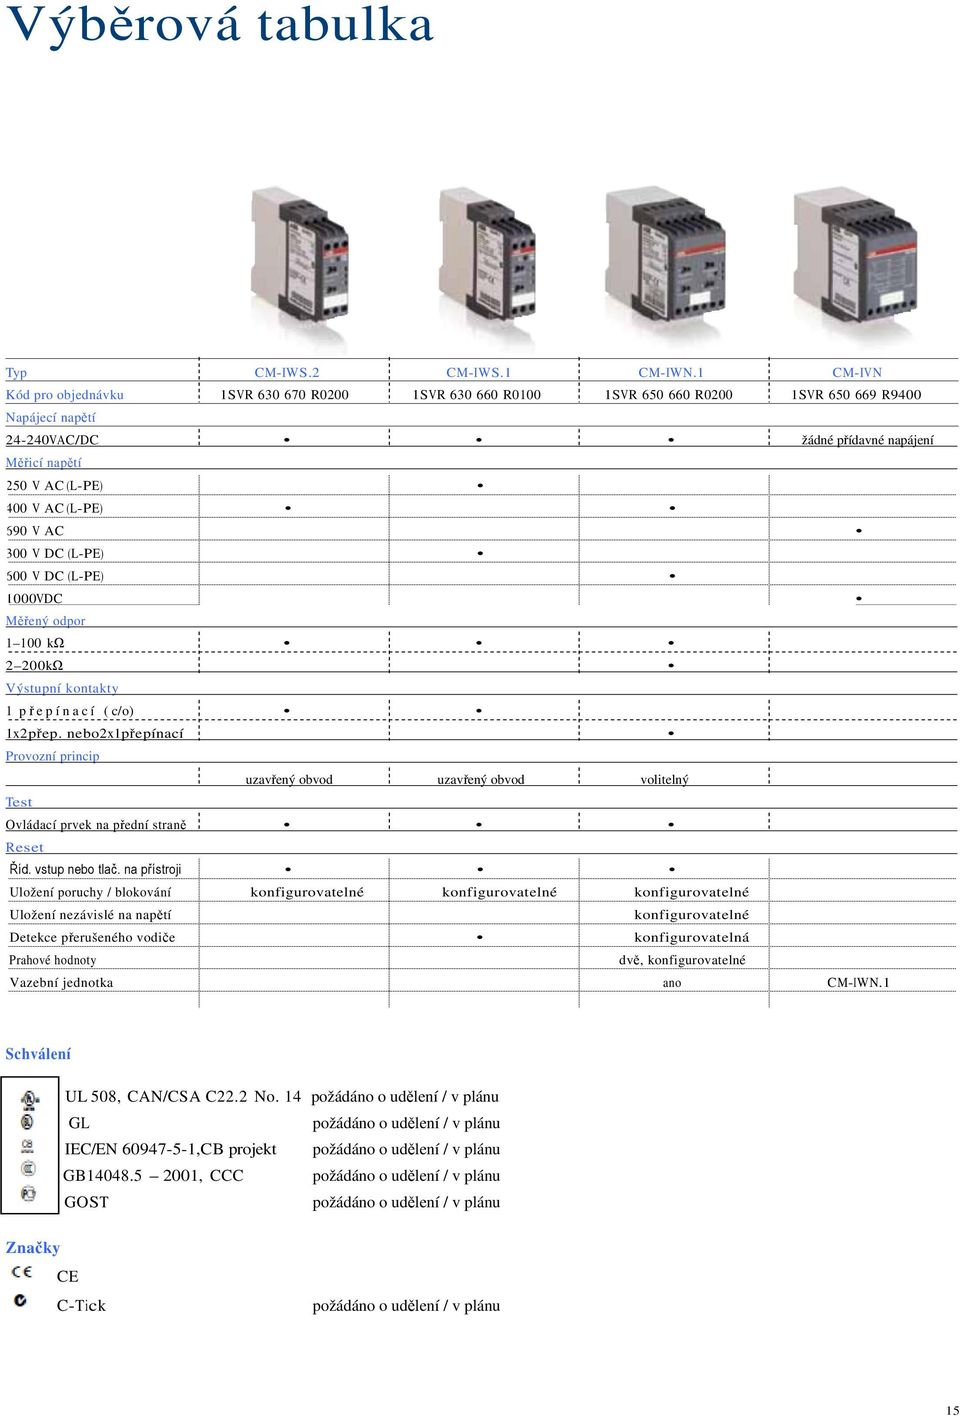 V AC 300 V DC (L-) 600 V DC (L-) 1000 V DC Mený odpor 1 100 k 2 200 k Výstupní kontakty 1 pepínací ( c/o) 1 x 2 pep.